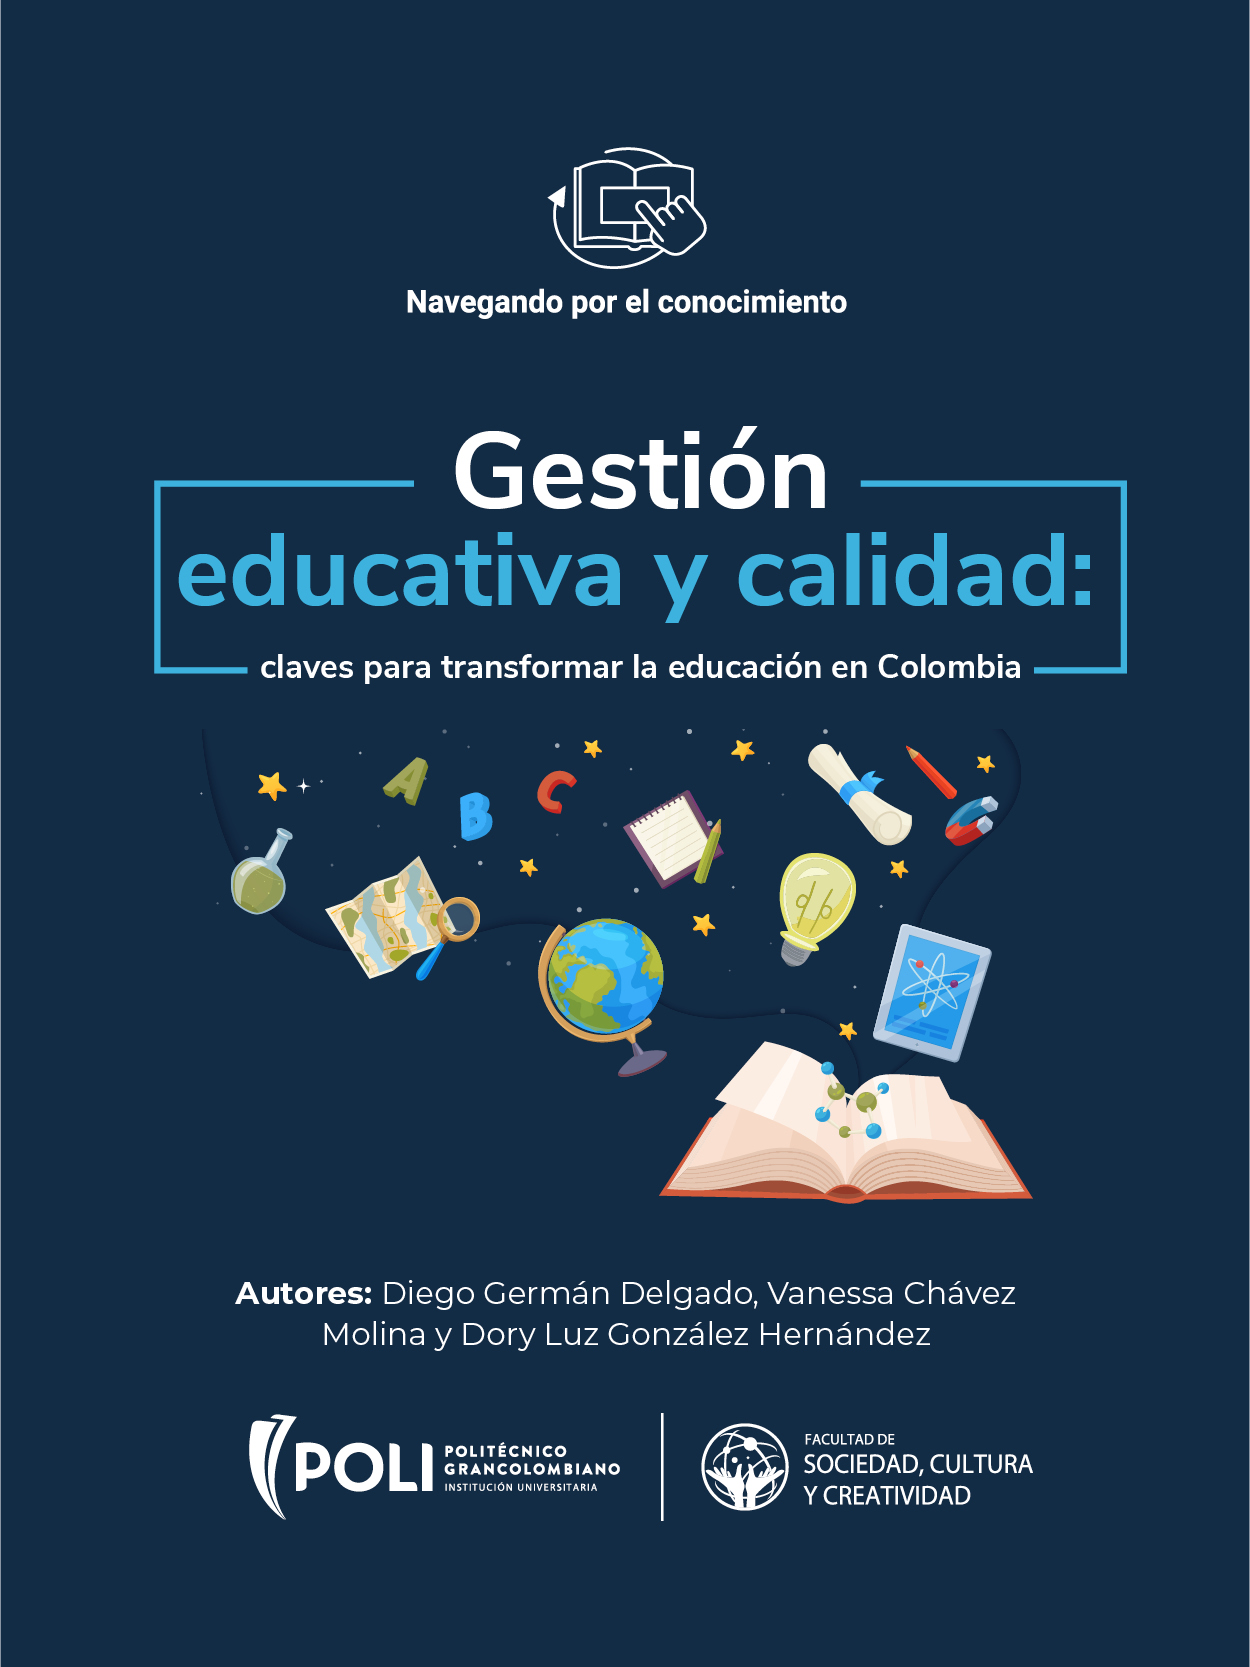 Gestión educativa y calidad: claves para transformar la educación en Colombia